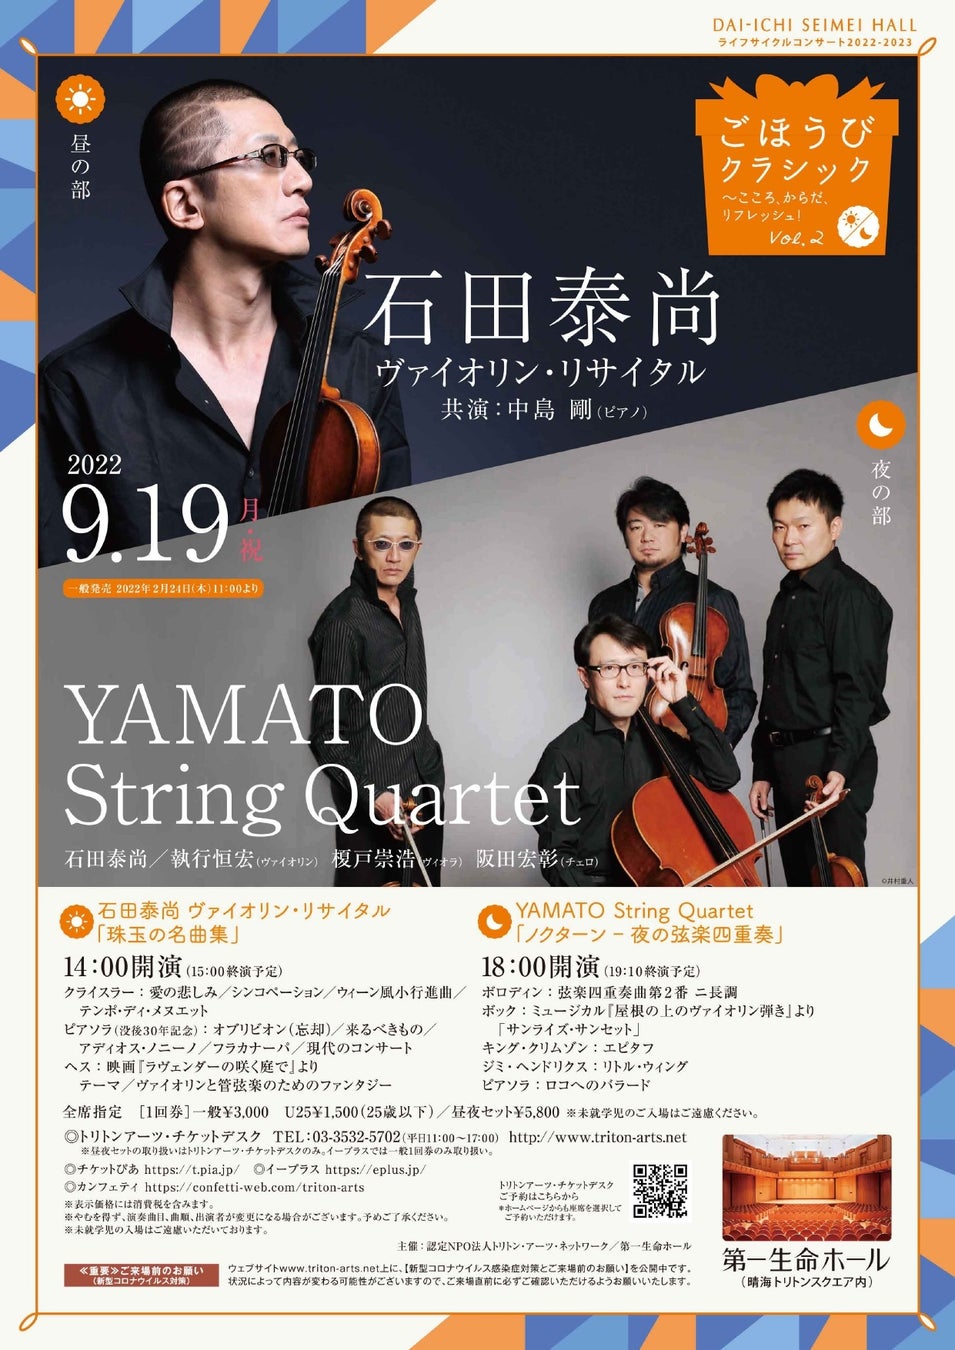 第一線で活躍するヴァイオリニスト達の演奏を楽しもう『ごほうびクラシック♪ 第2回 石田泰尚（ヴァイオリン）＆YAMATO String Quartet』開催！カンフェティにてチケット発売！